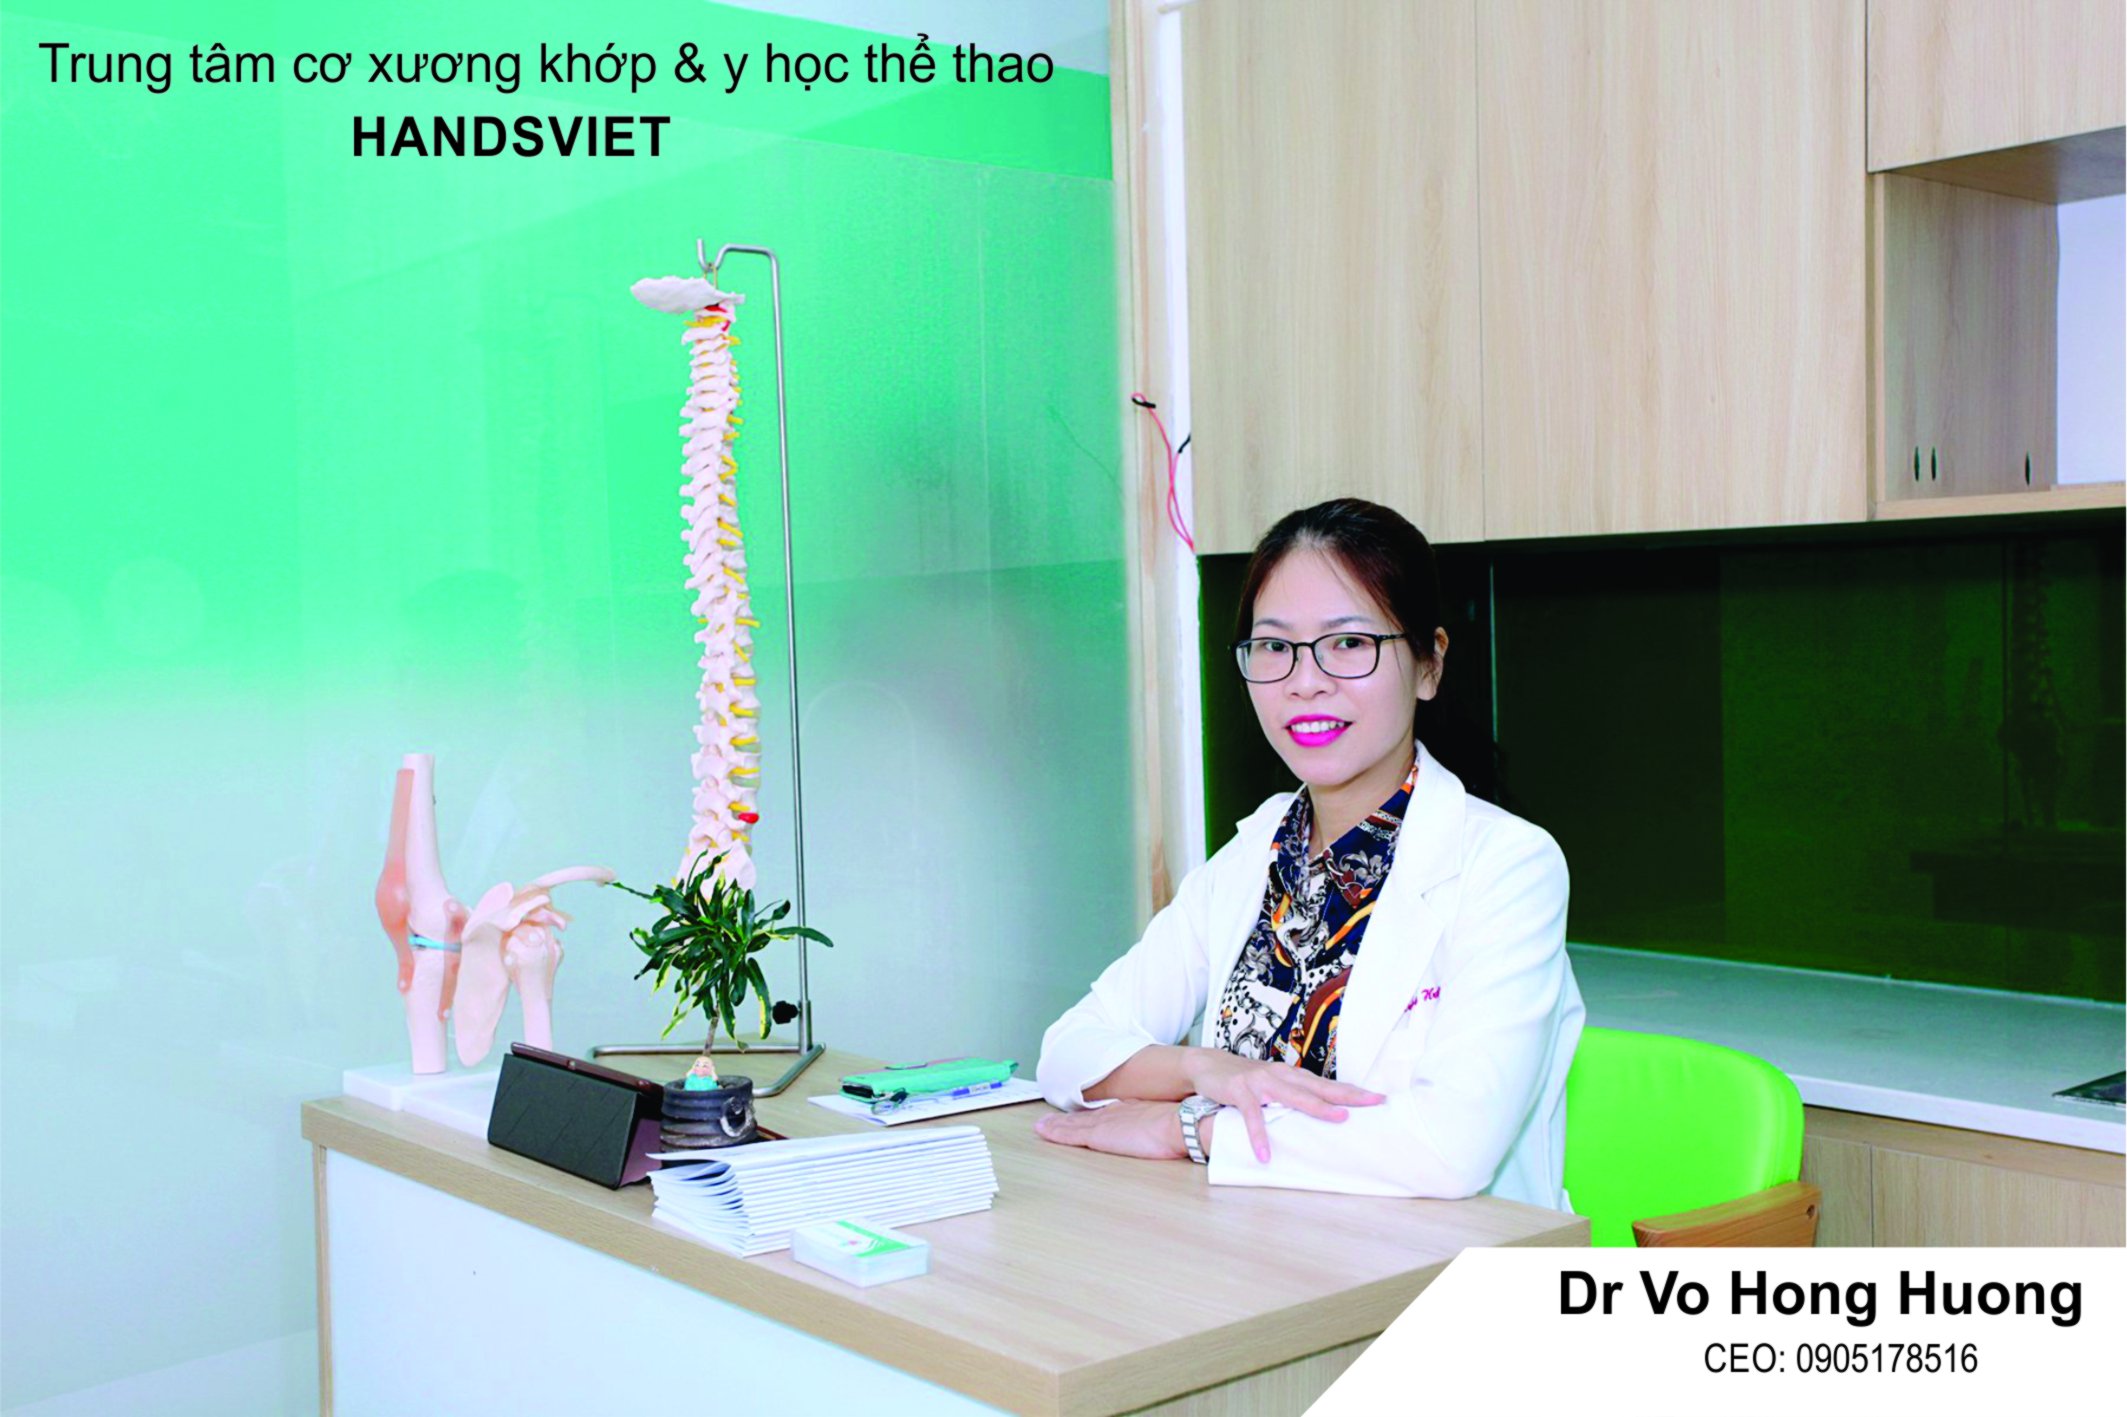 Dr Vo Hong Huong